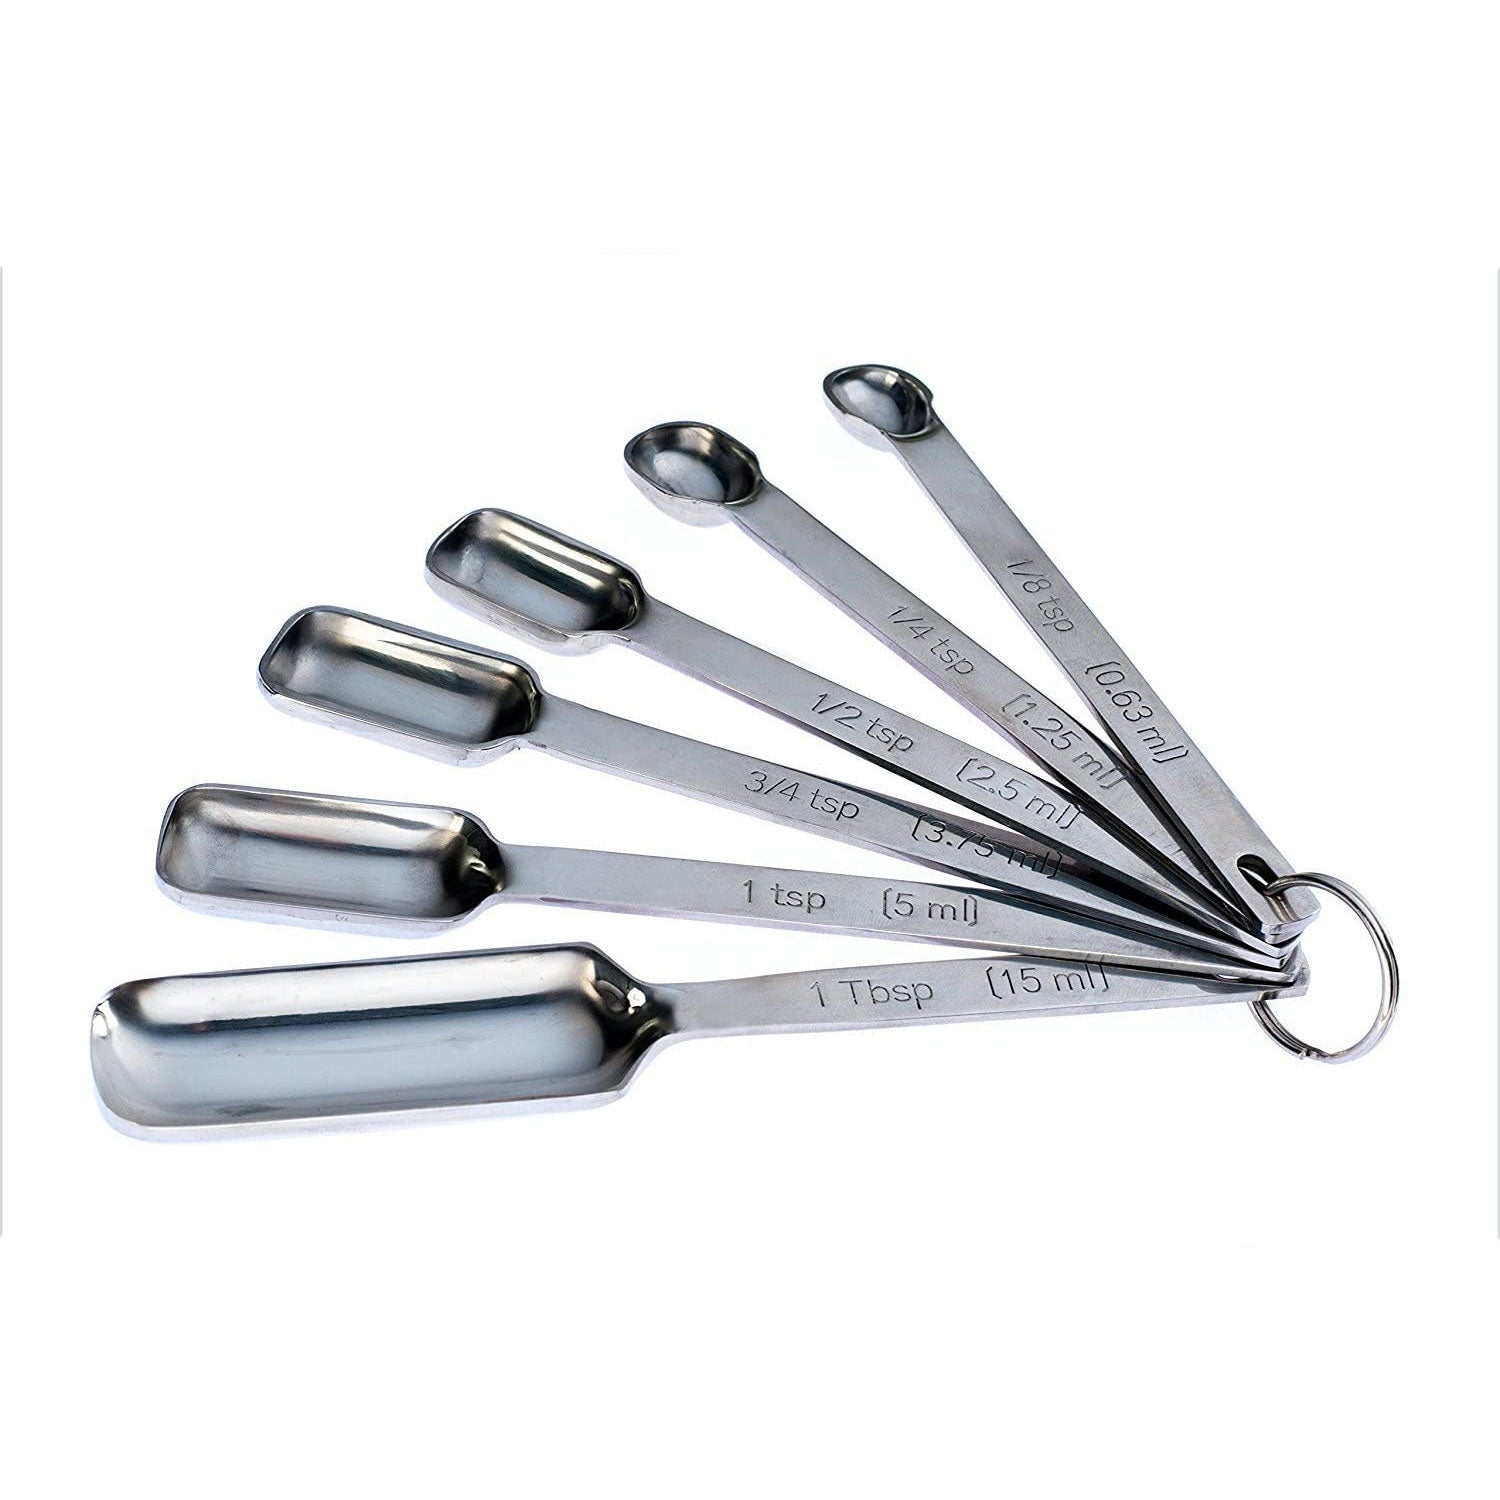 Measuring Spoons Stainless Steel Set of 4 1tbsp, 1tsp, 1/2tsp, 1